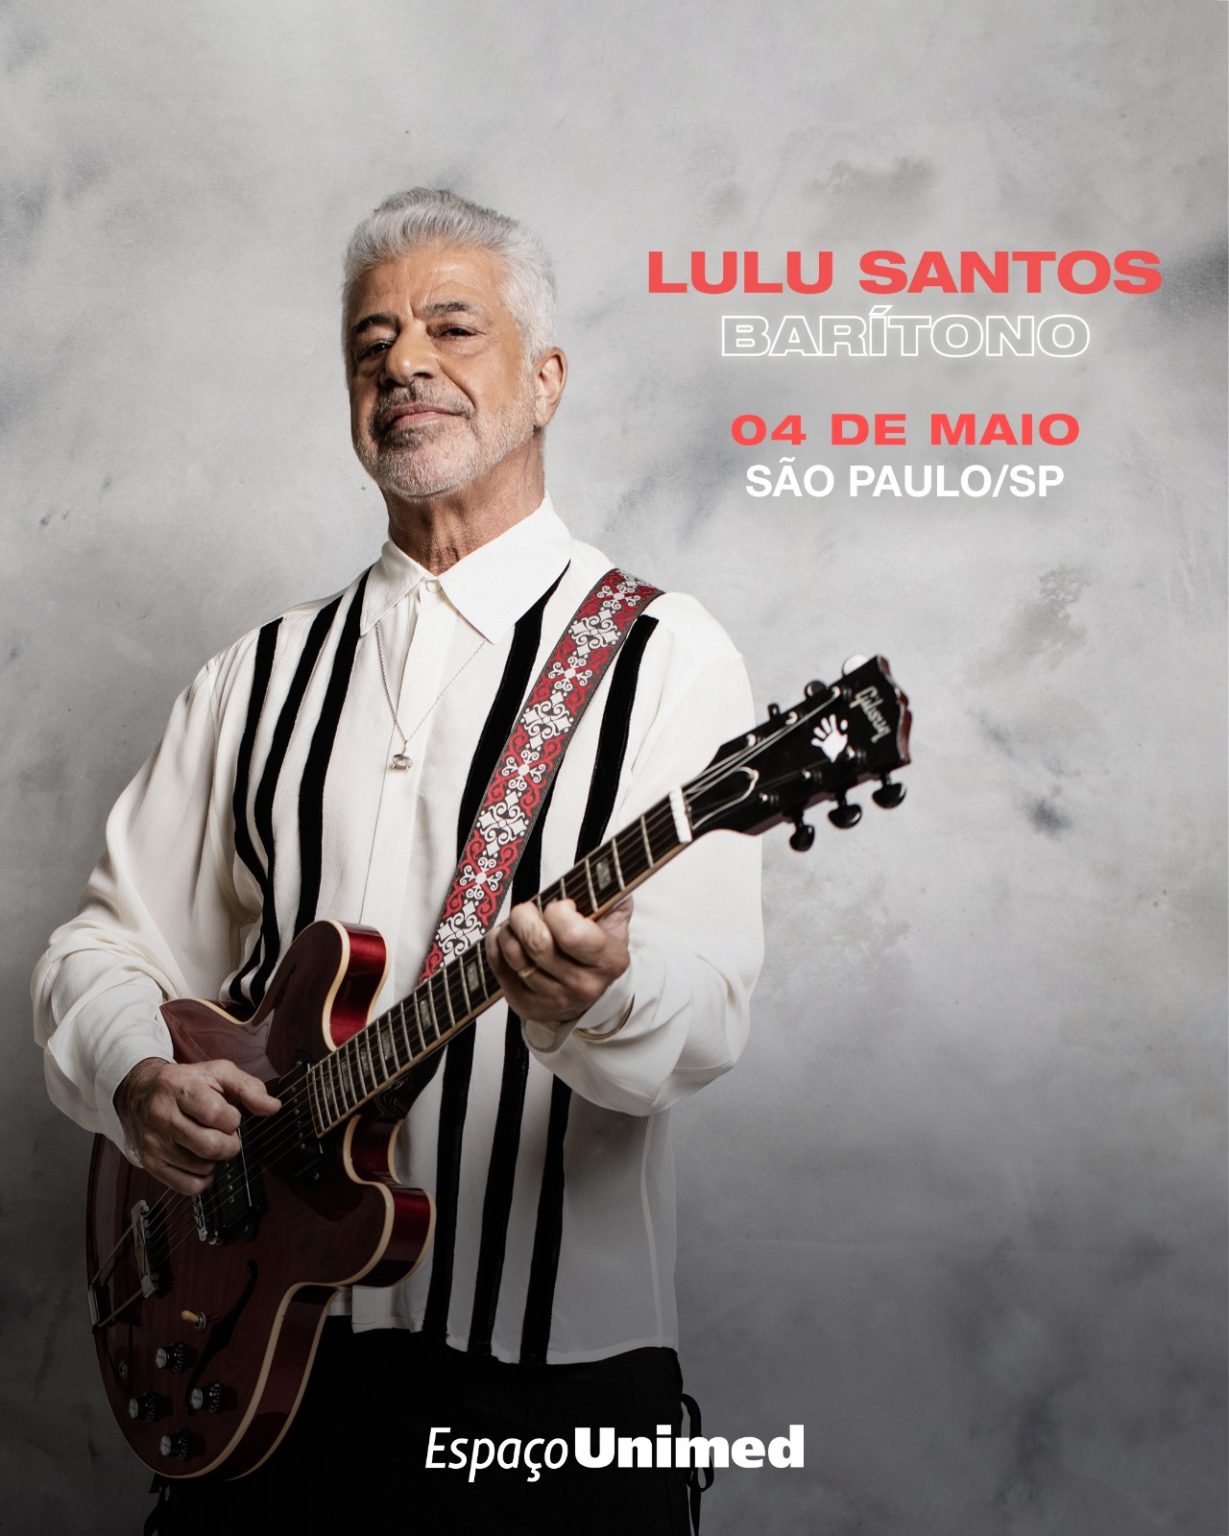 Lulu Santos Celebra Aniversário com Turnê “Barítono” no Espaço Unimed em São Paulo